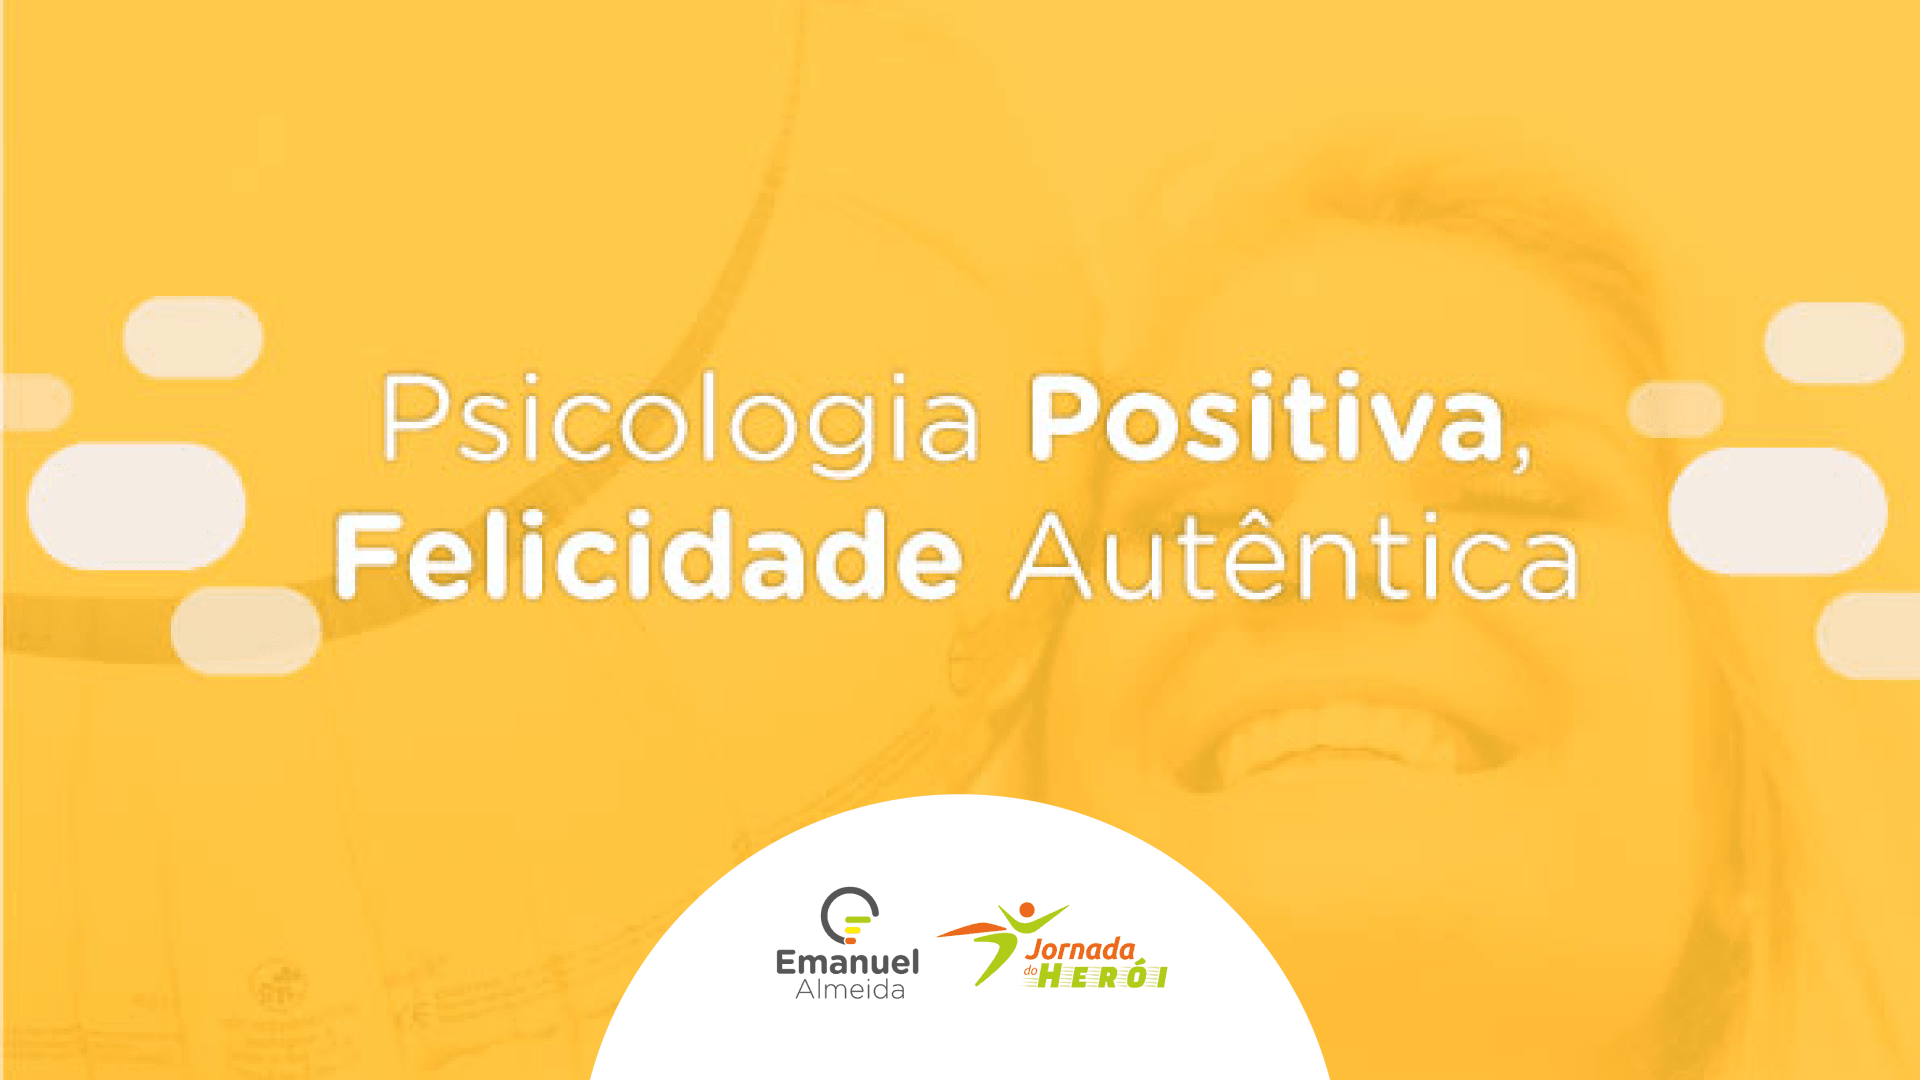 Psicologia Positiva, Felicidade Autêntica